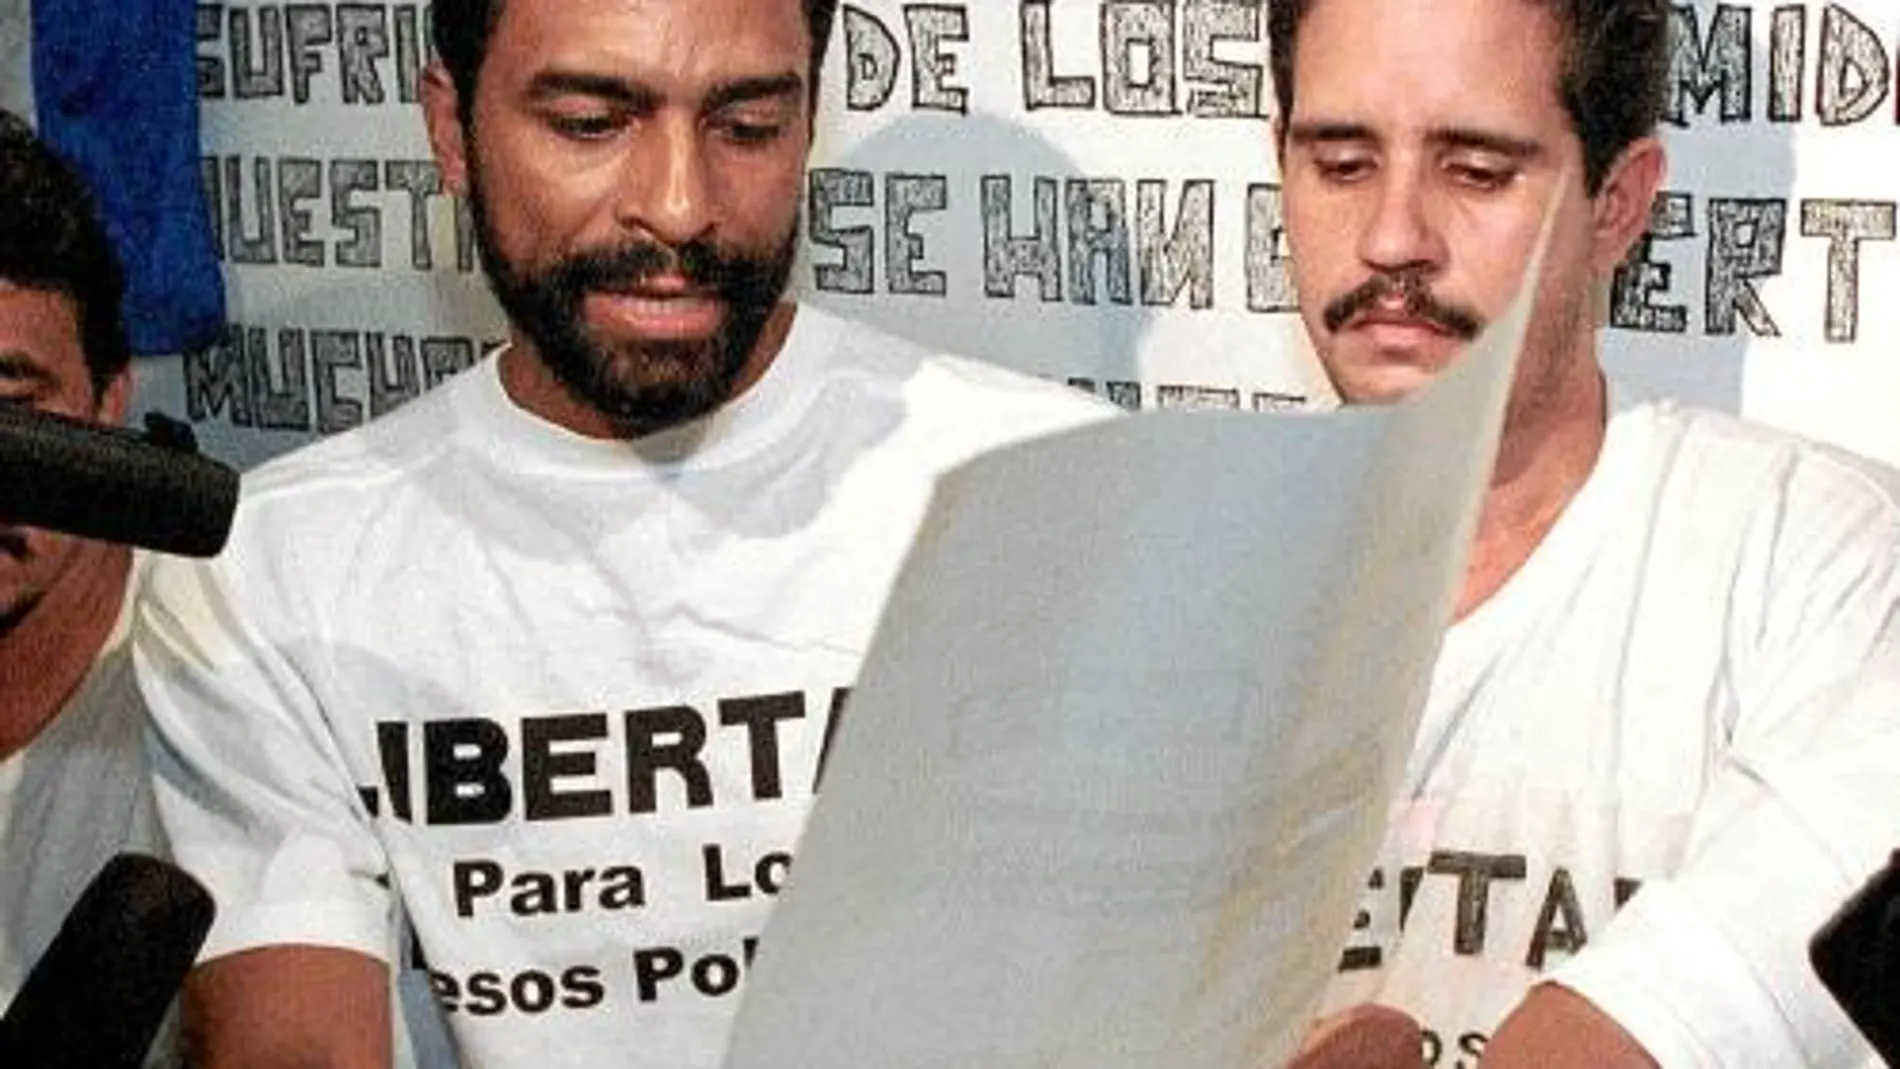 El opositor Elías Biscet, con barba, durante un acto en 1999 en el que instaba a la dictadura a liberar a todos los presos políticos cubanos